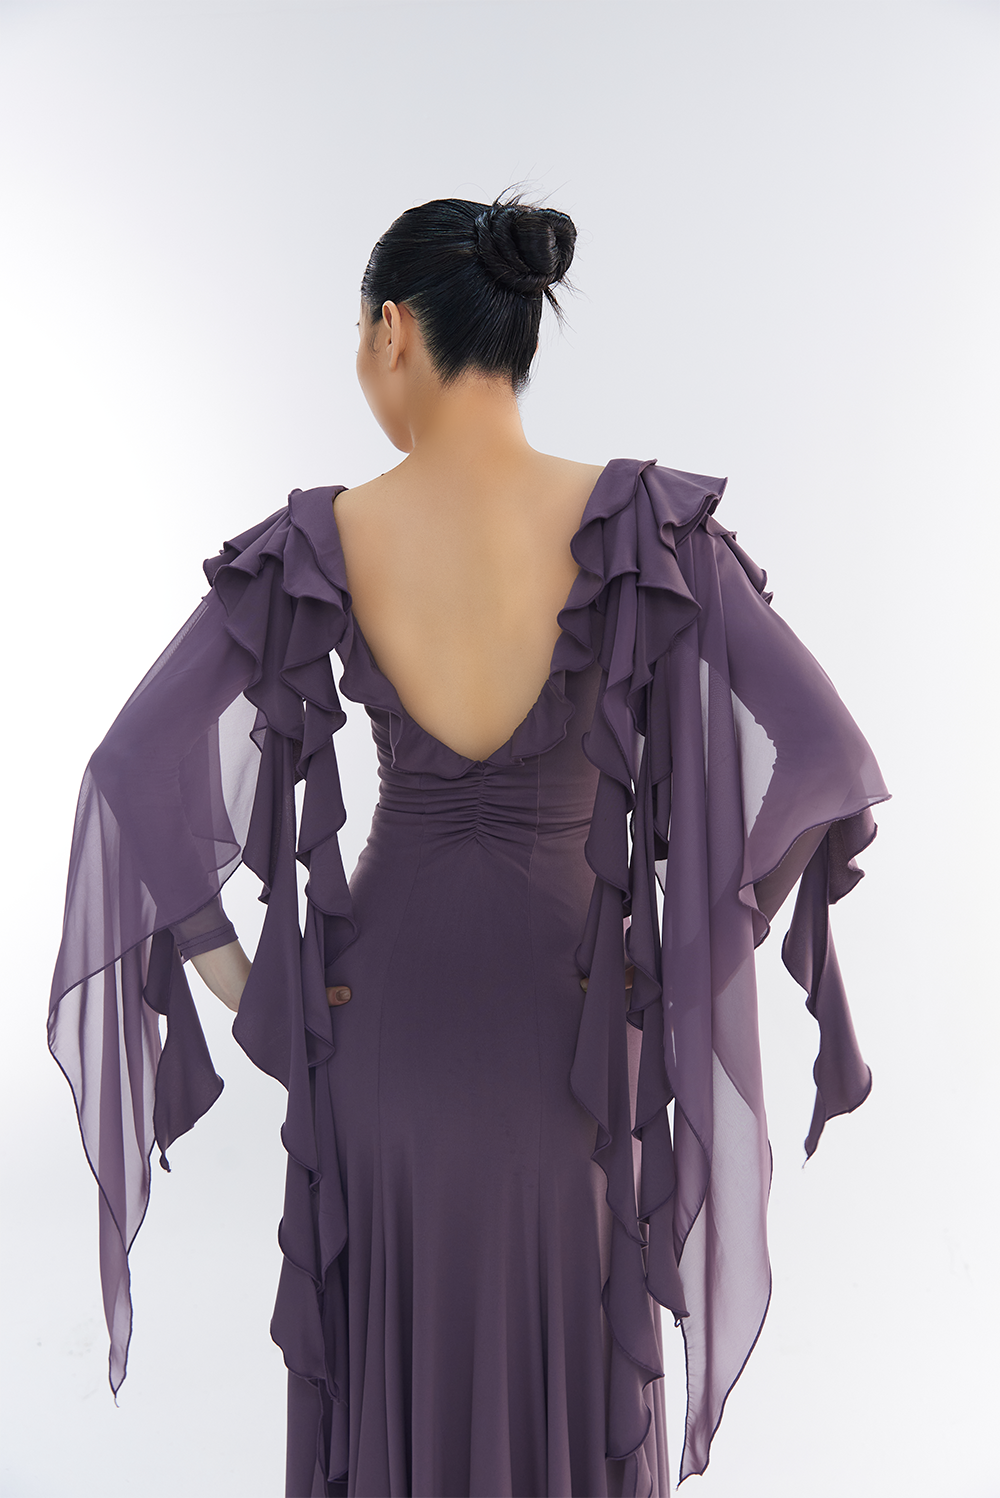 DANCE QUEEN 606-2 Tailor Made Light Purple Dress